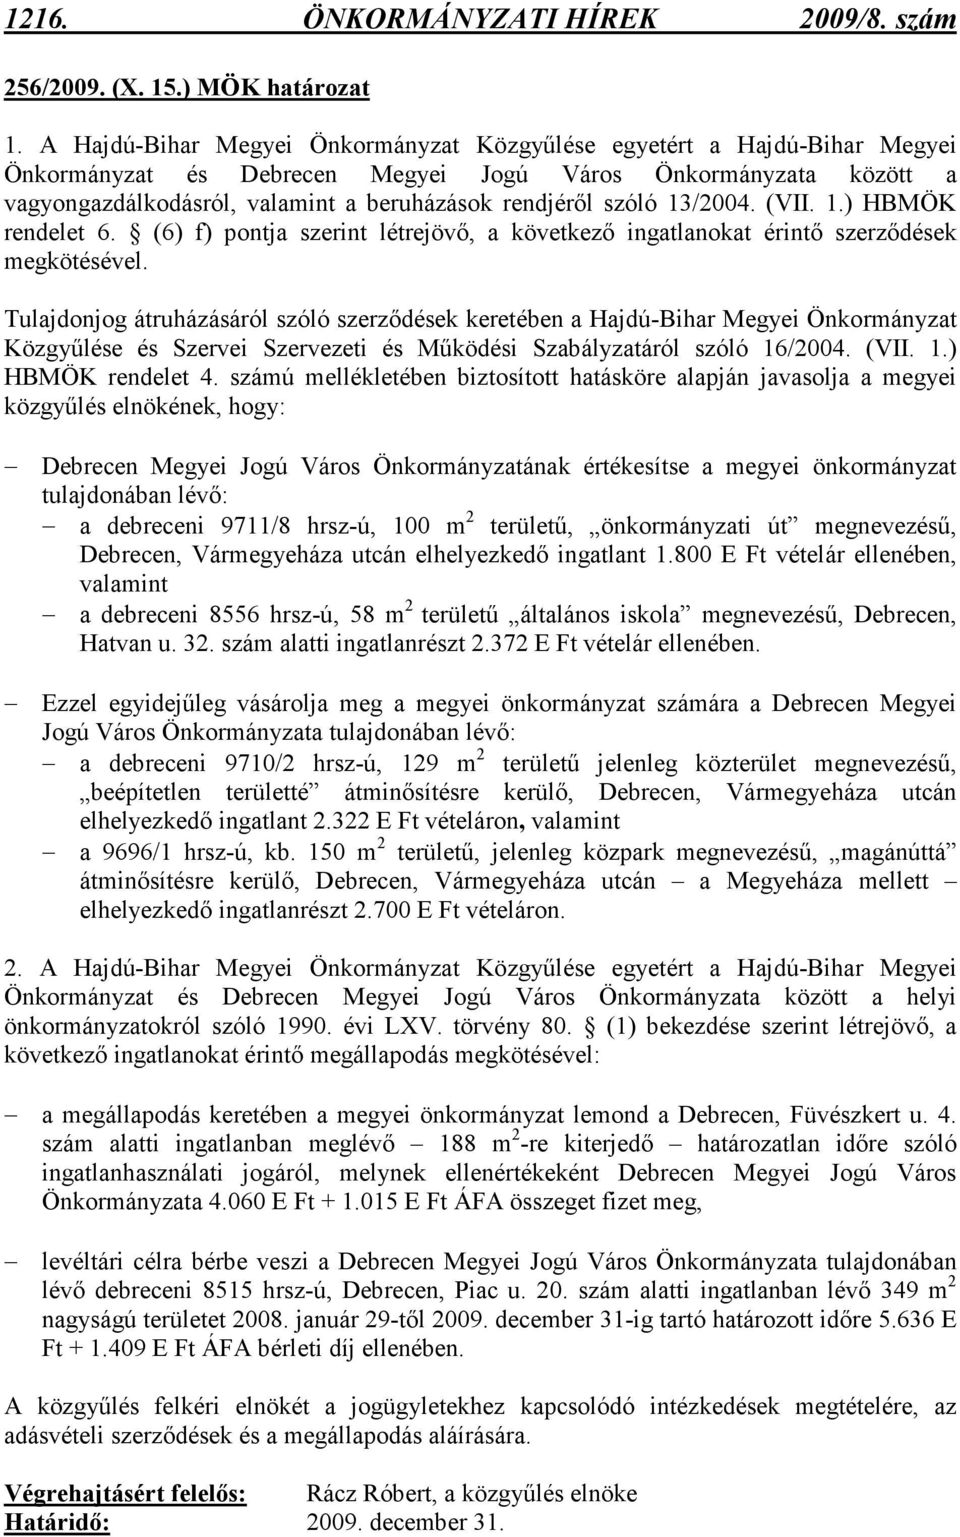 szóló 13/2004. (VII. 1.) HBMÖK rendelet 6. (6) f) pontja szerint létrejövı, a következı ingatlanokat érintı szerzıdések megkötésével.